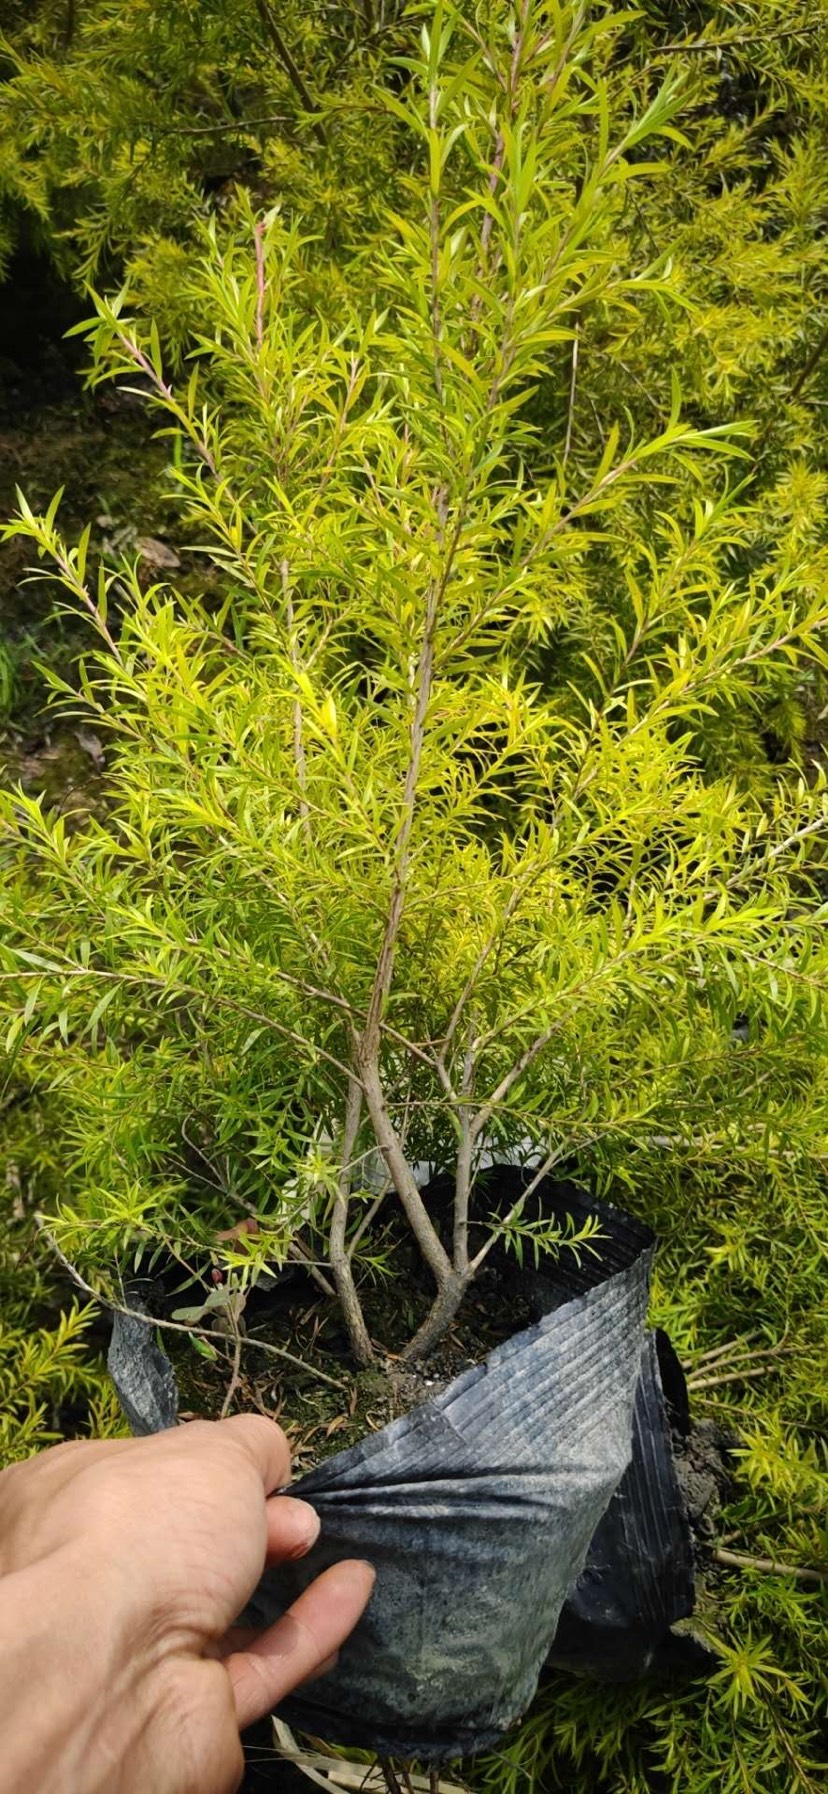 普宁市黄金宝树 黄金香柳袋苗40*40公分大袋优良的彩叶树种根系发达